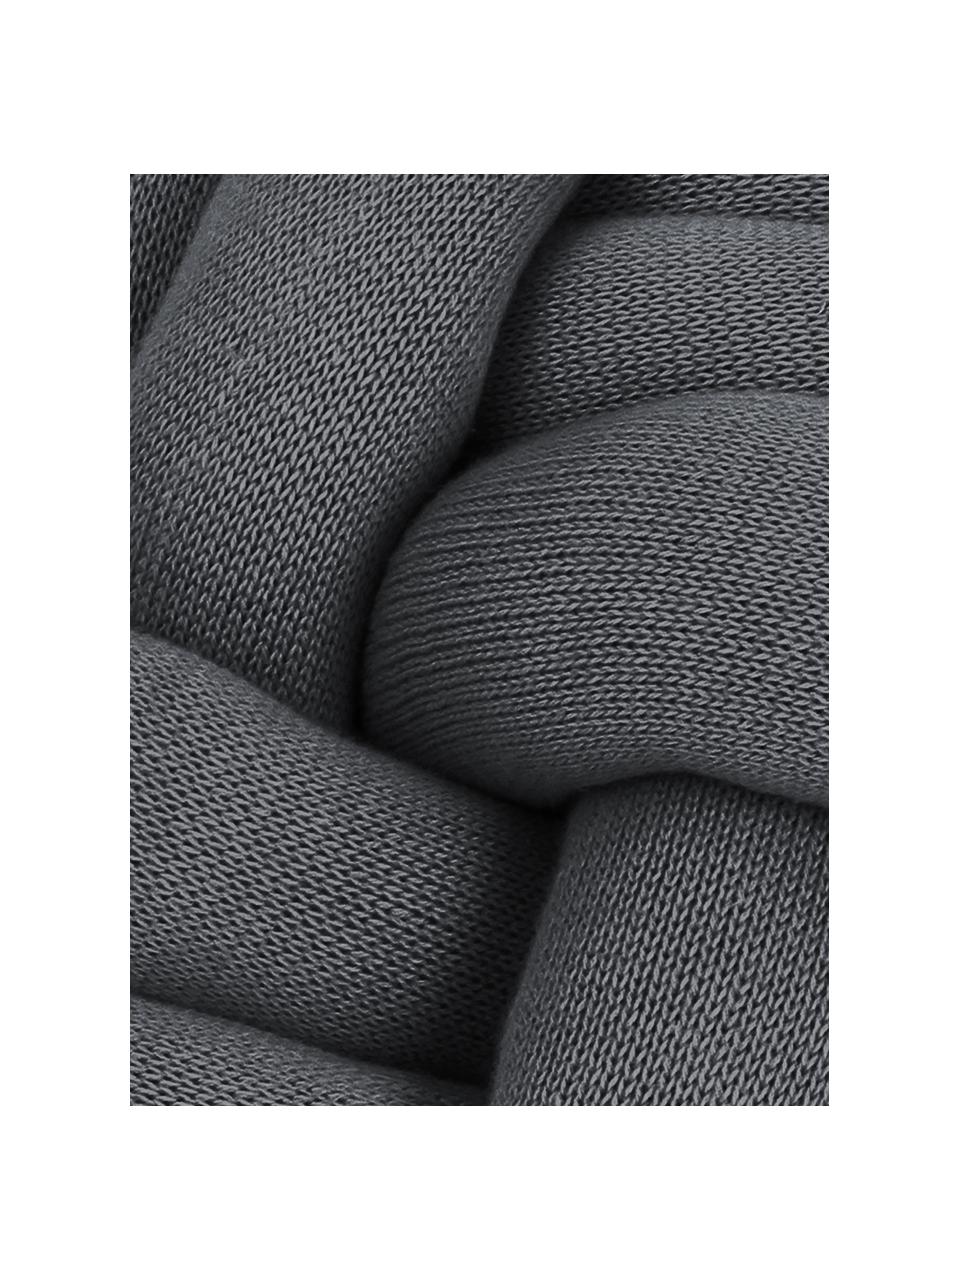 Cuscino annodato grigio scuro Twist, Grigio scuro, Ø 30 cm